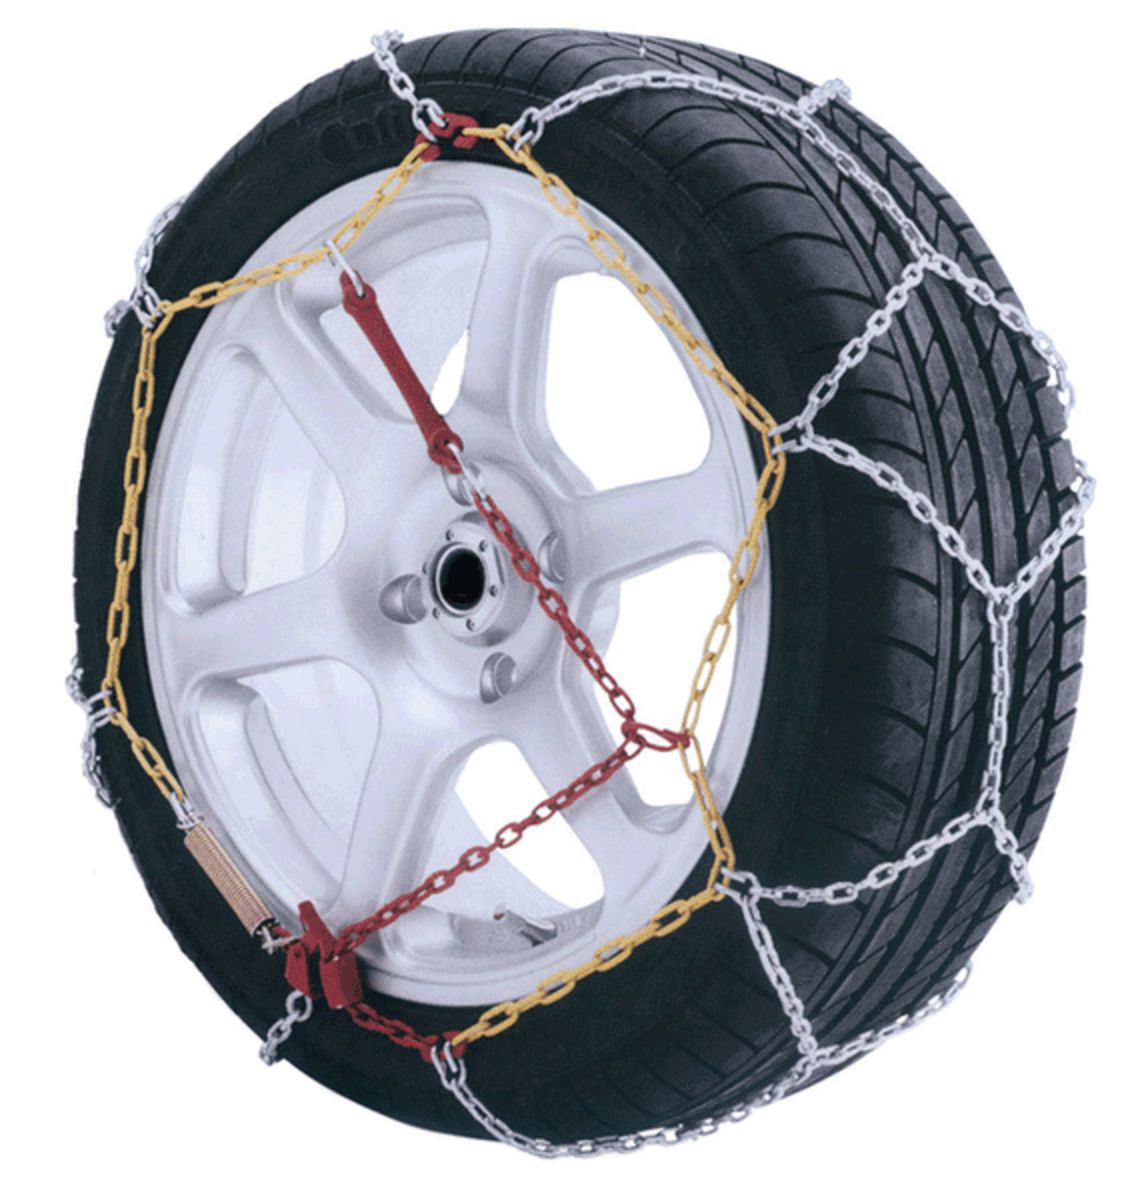 Chaine neige 9mm pneu 235/45R15 montage rapide sécurité garantie